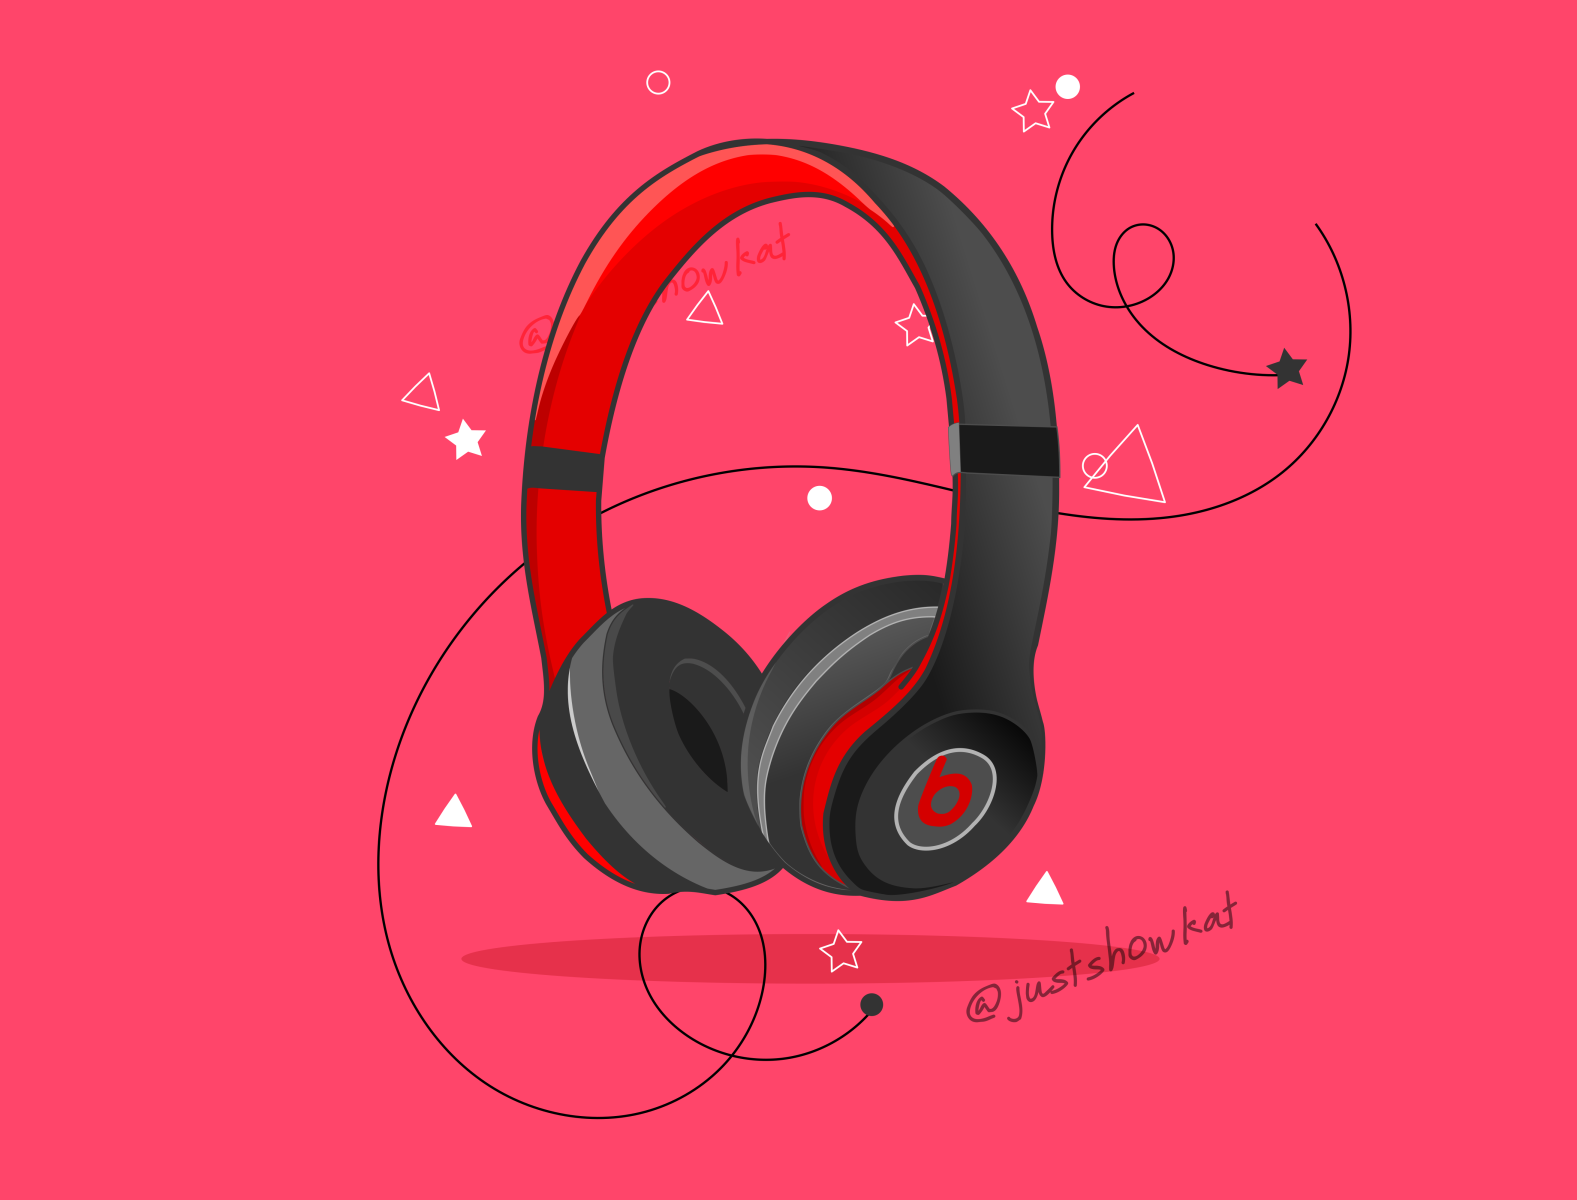 beats headphone vector art done by mshowkat by M Showkat on Dribbble